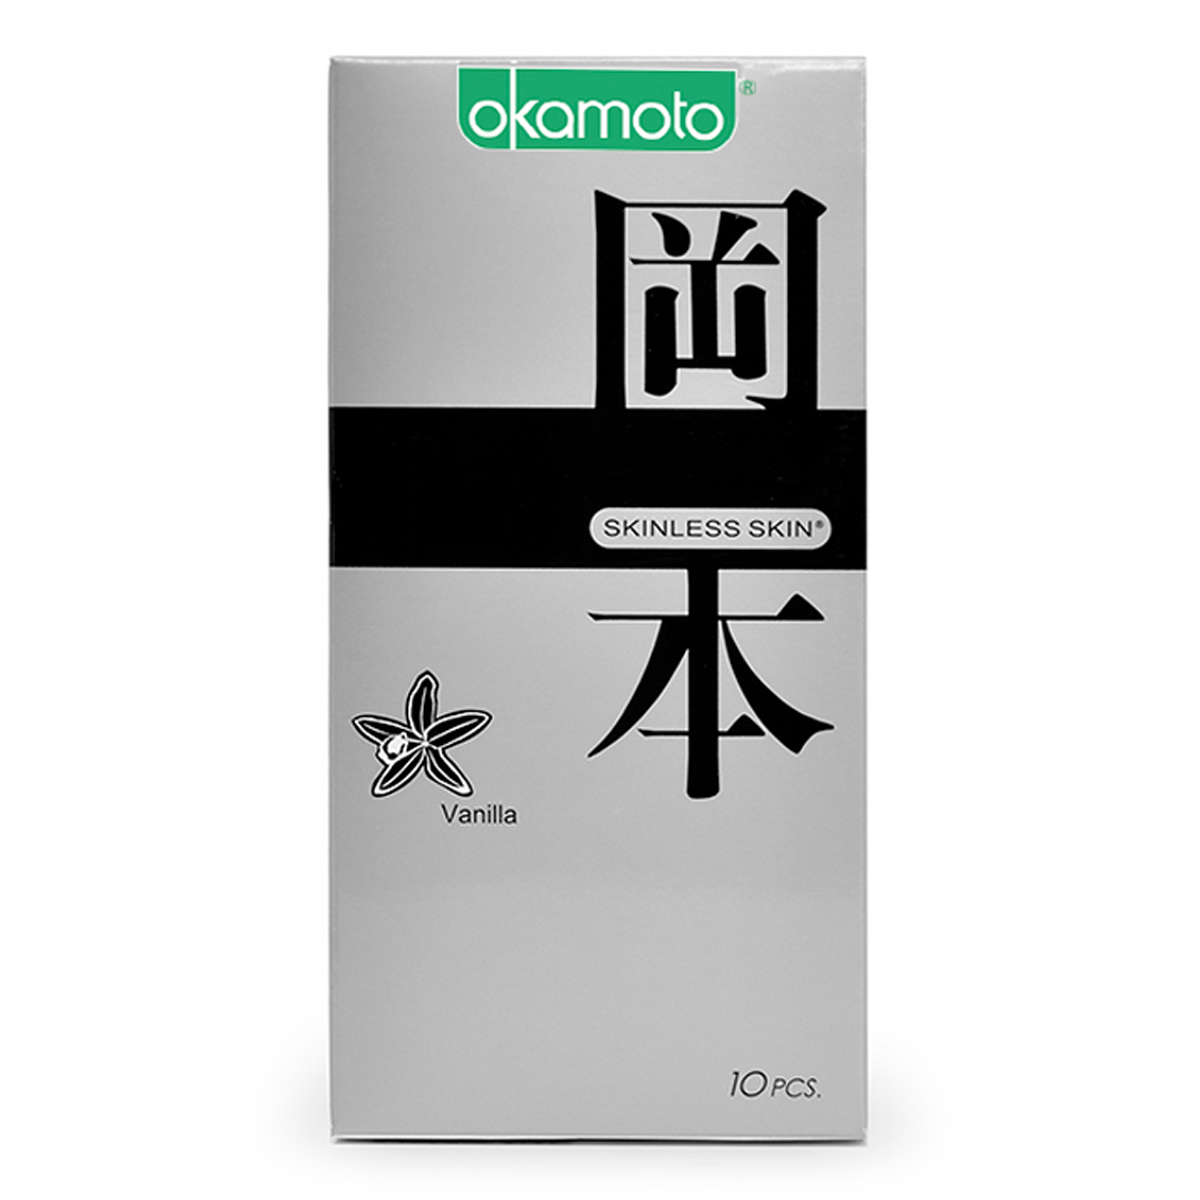 Bao cao su hương Vanilla, Sáng bóng mềm mại Okamoto Skinless Skin Vanilla-10's với thiết kế mỏng mới lạ, ấn tượng, dẻo dai, mang đến cảm giác chân thật cùng hương Vanilla quyến rũ. Đặc biệt, sản phẩm được sản xuất hoàn toàn bằng cao su thiên nhiên cao cấp cũng như đáp ứng các yêu cầu và điều kiện sản xuất nghiêm ngặt, đảm bảo an toàn tối đa cho người sử dụng.